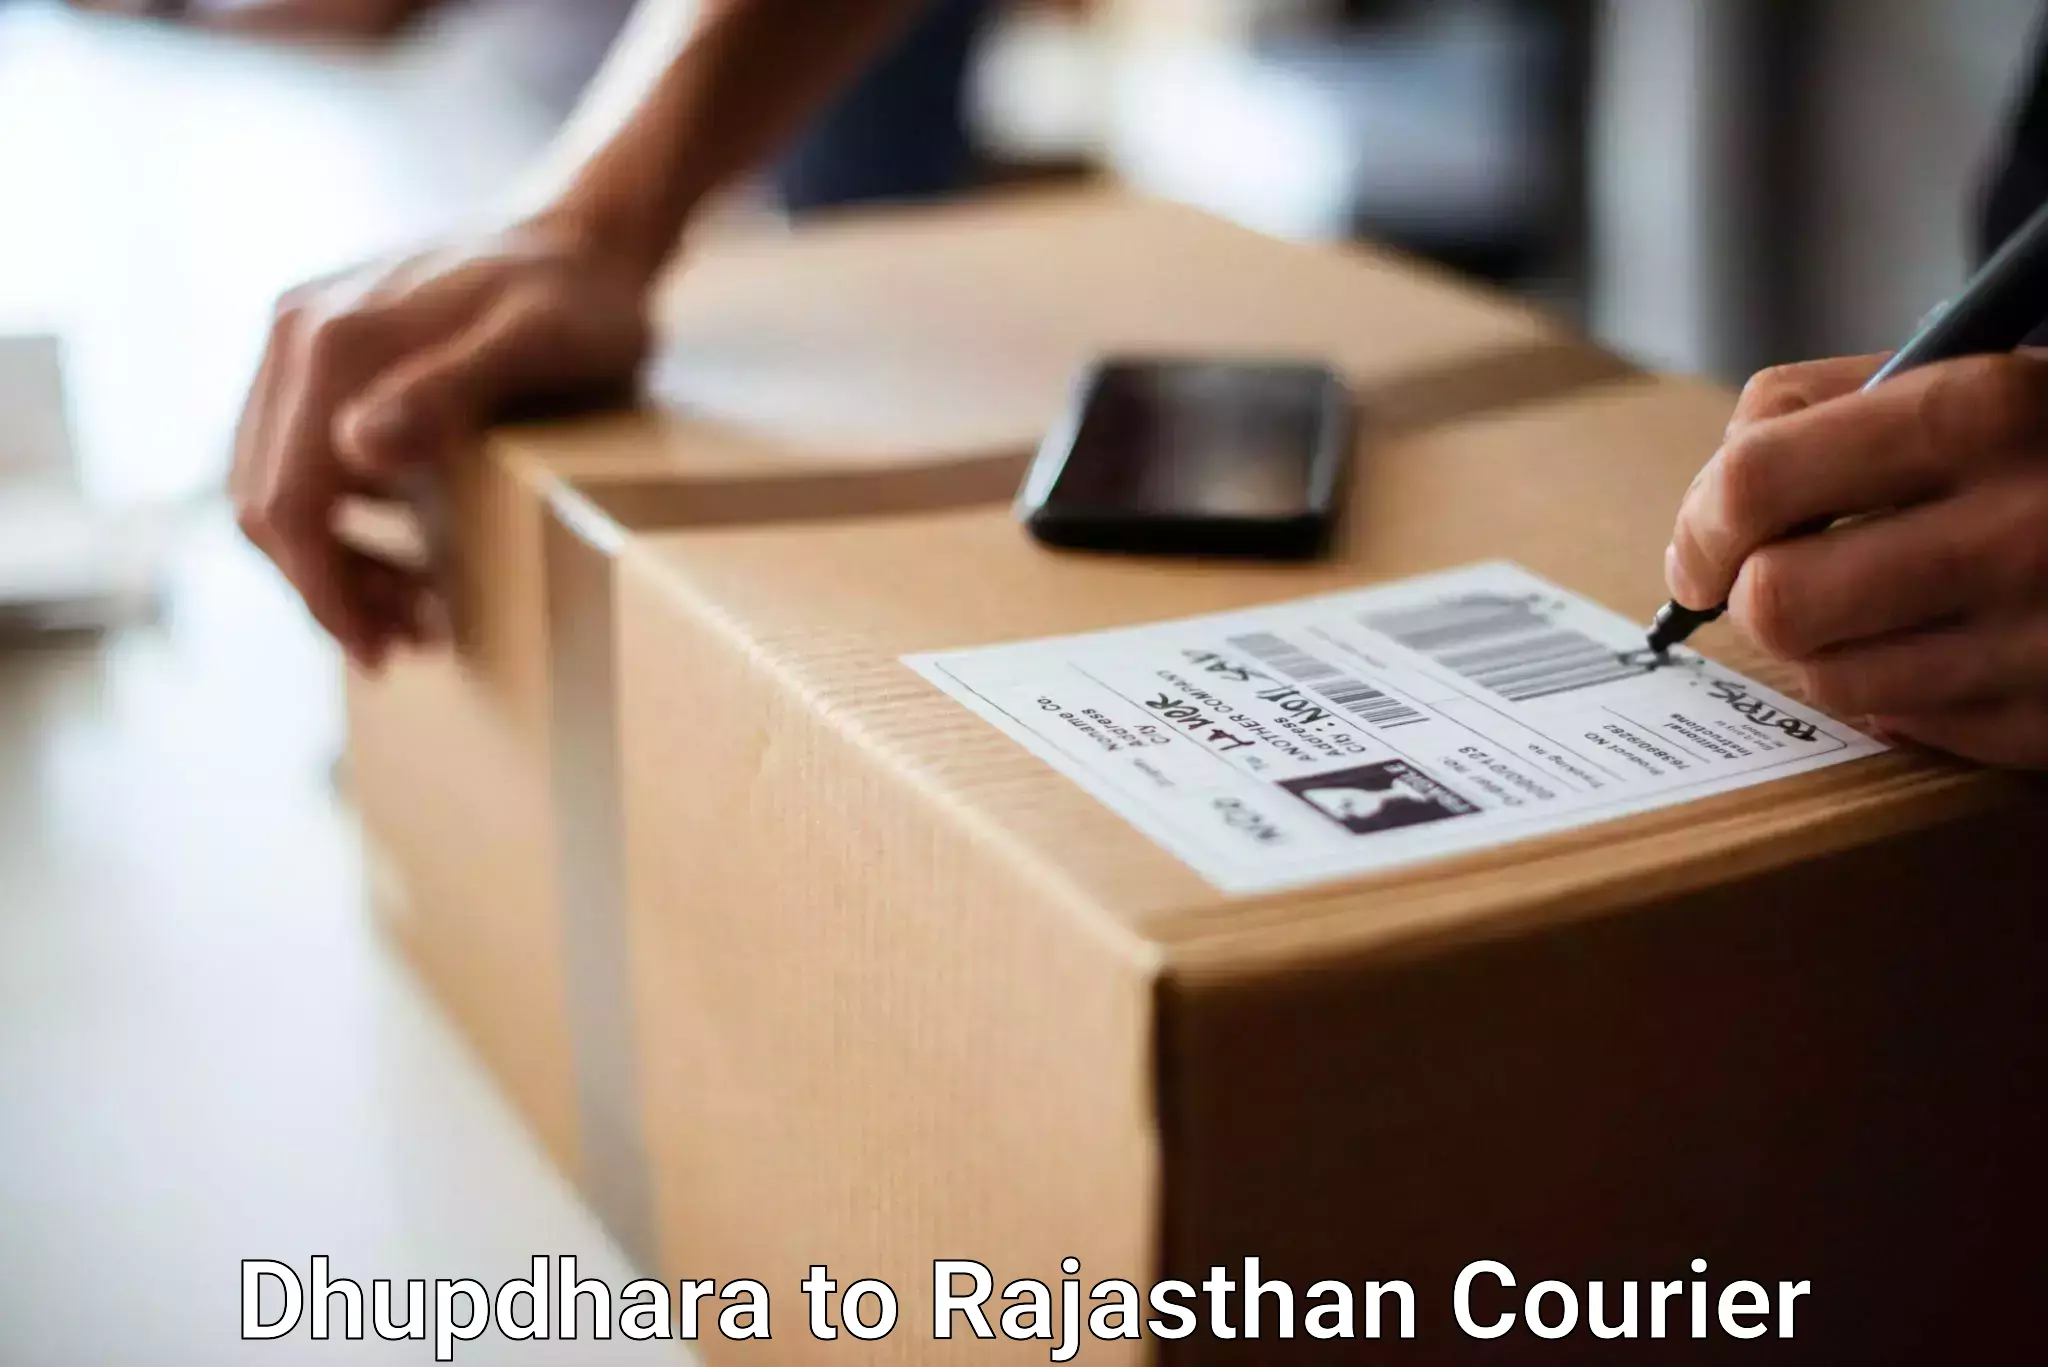 Baggage shipping quotes Dhupdhara to Nainwa